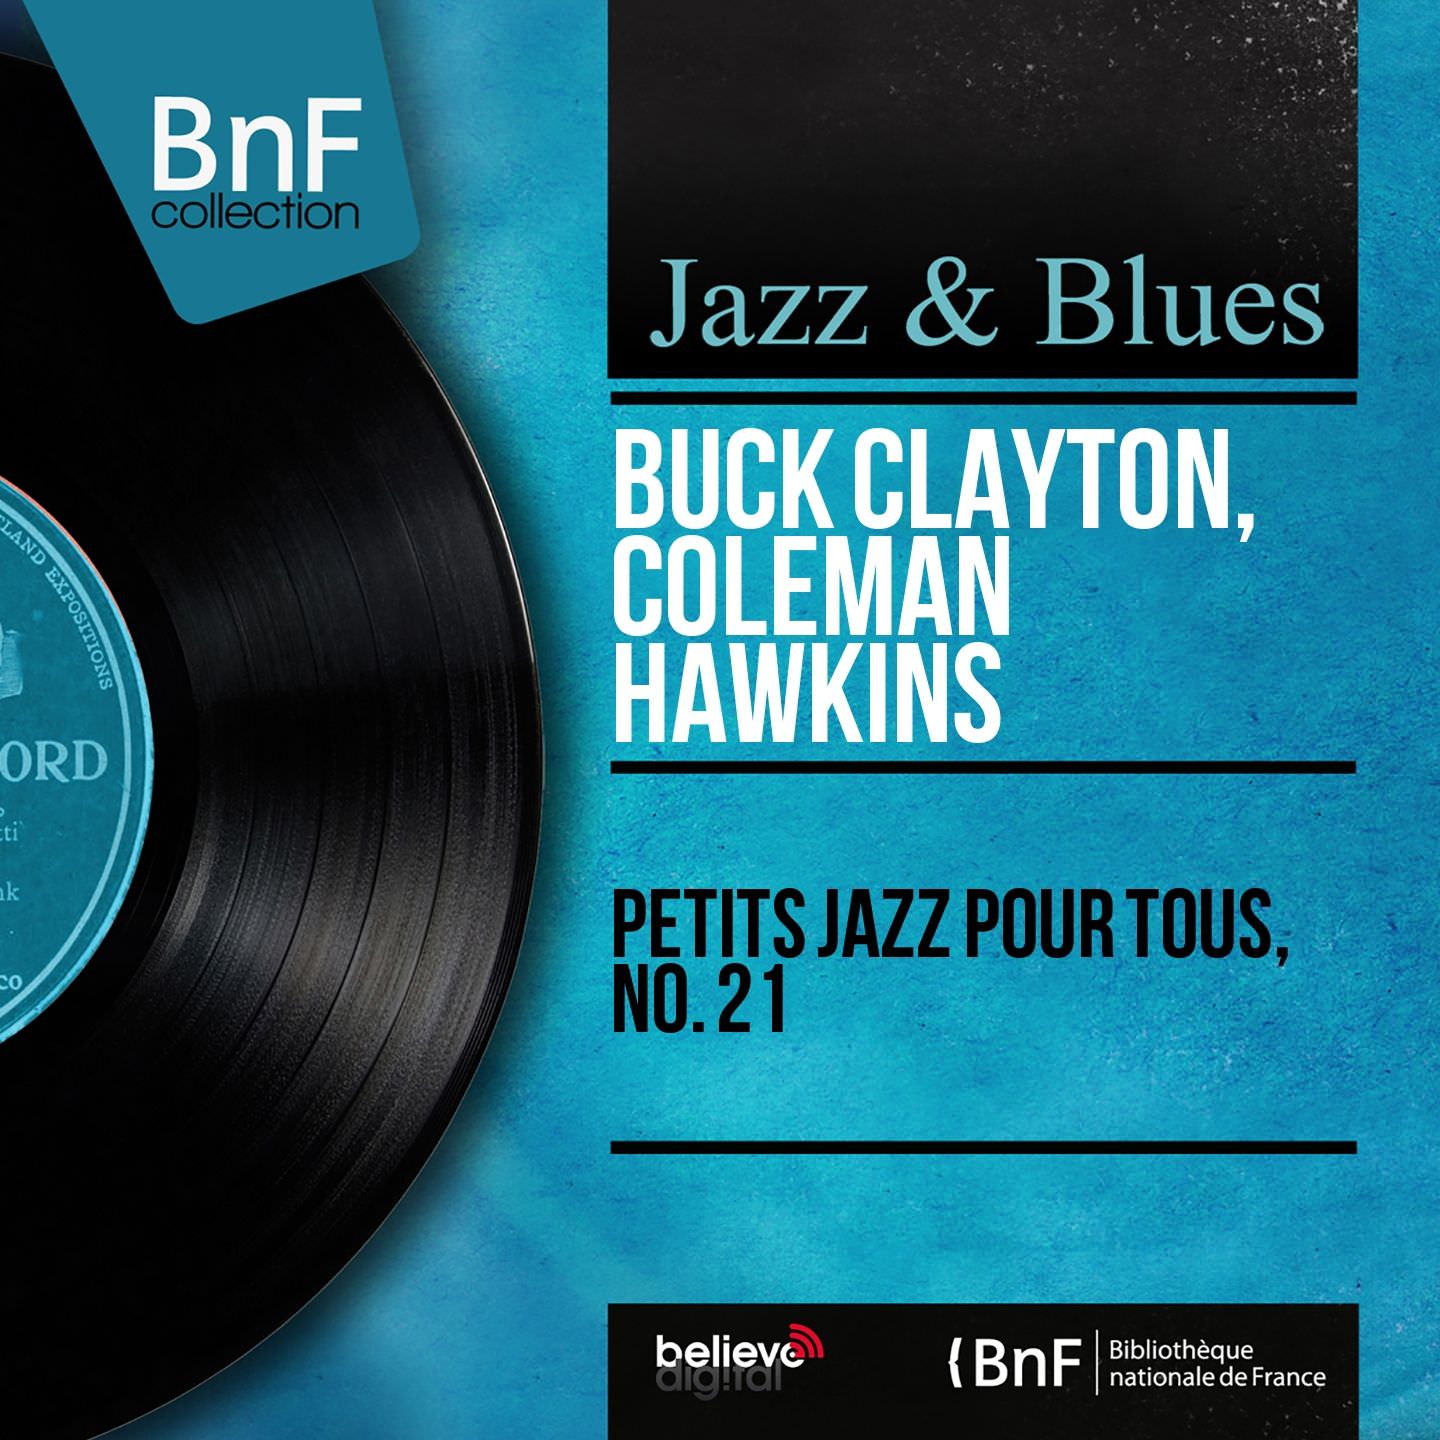 Buck Clayton, Coleman Hawkins - Petits jazz pour tous no.21 (1959/2014) [Qobuz FLAC 24bit/96kHz]